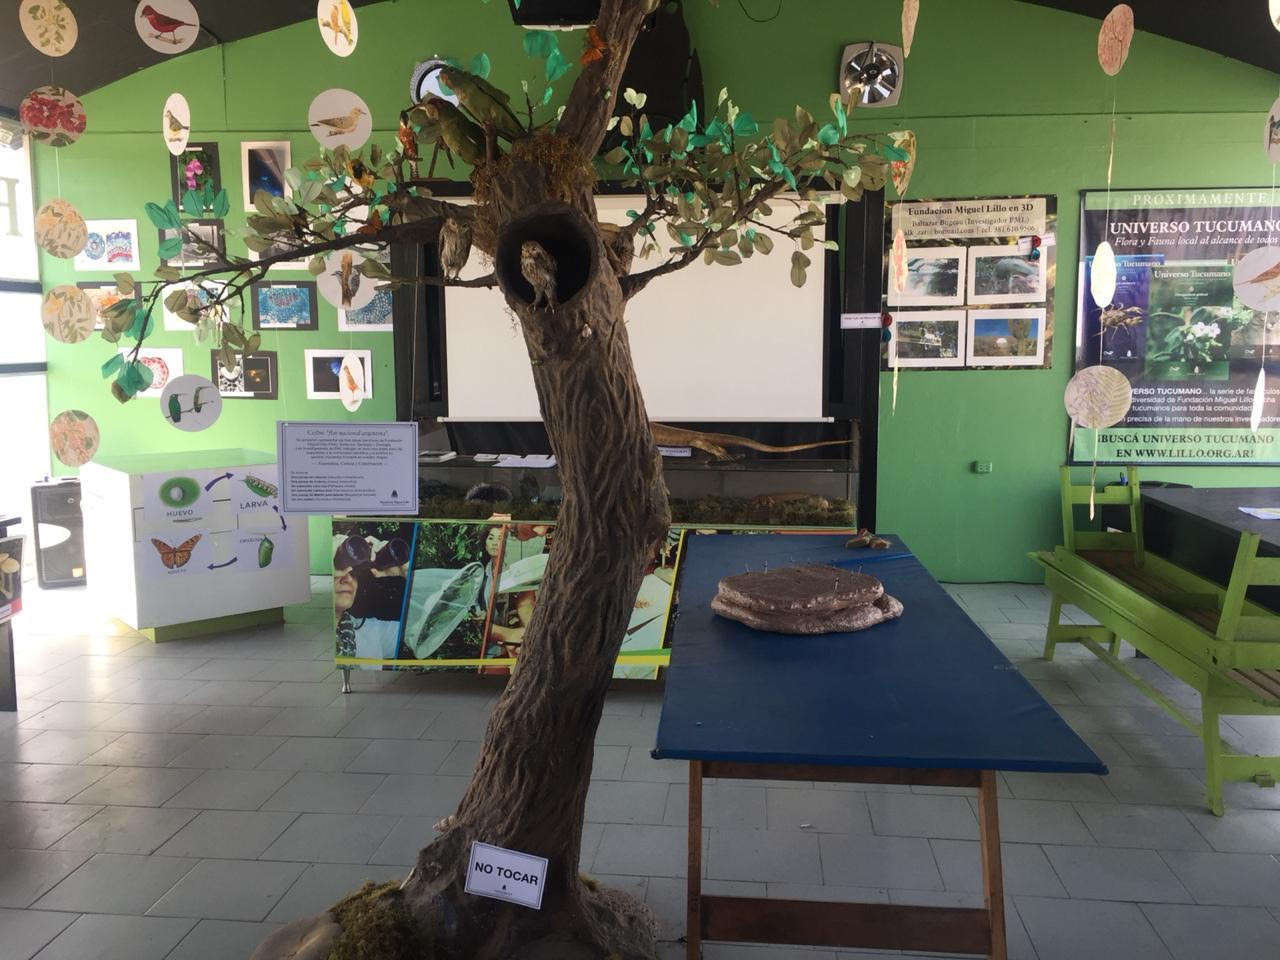 Fundación Miguel Lillo en la EXPO 2018: Naturaleza, ciencia y conservación